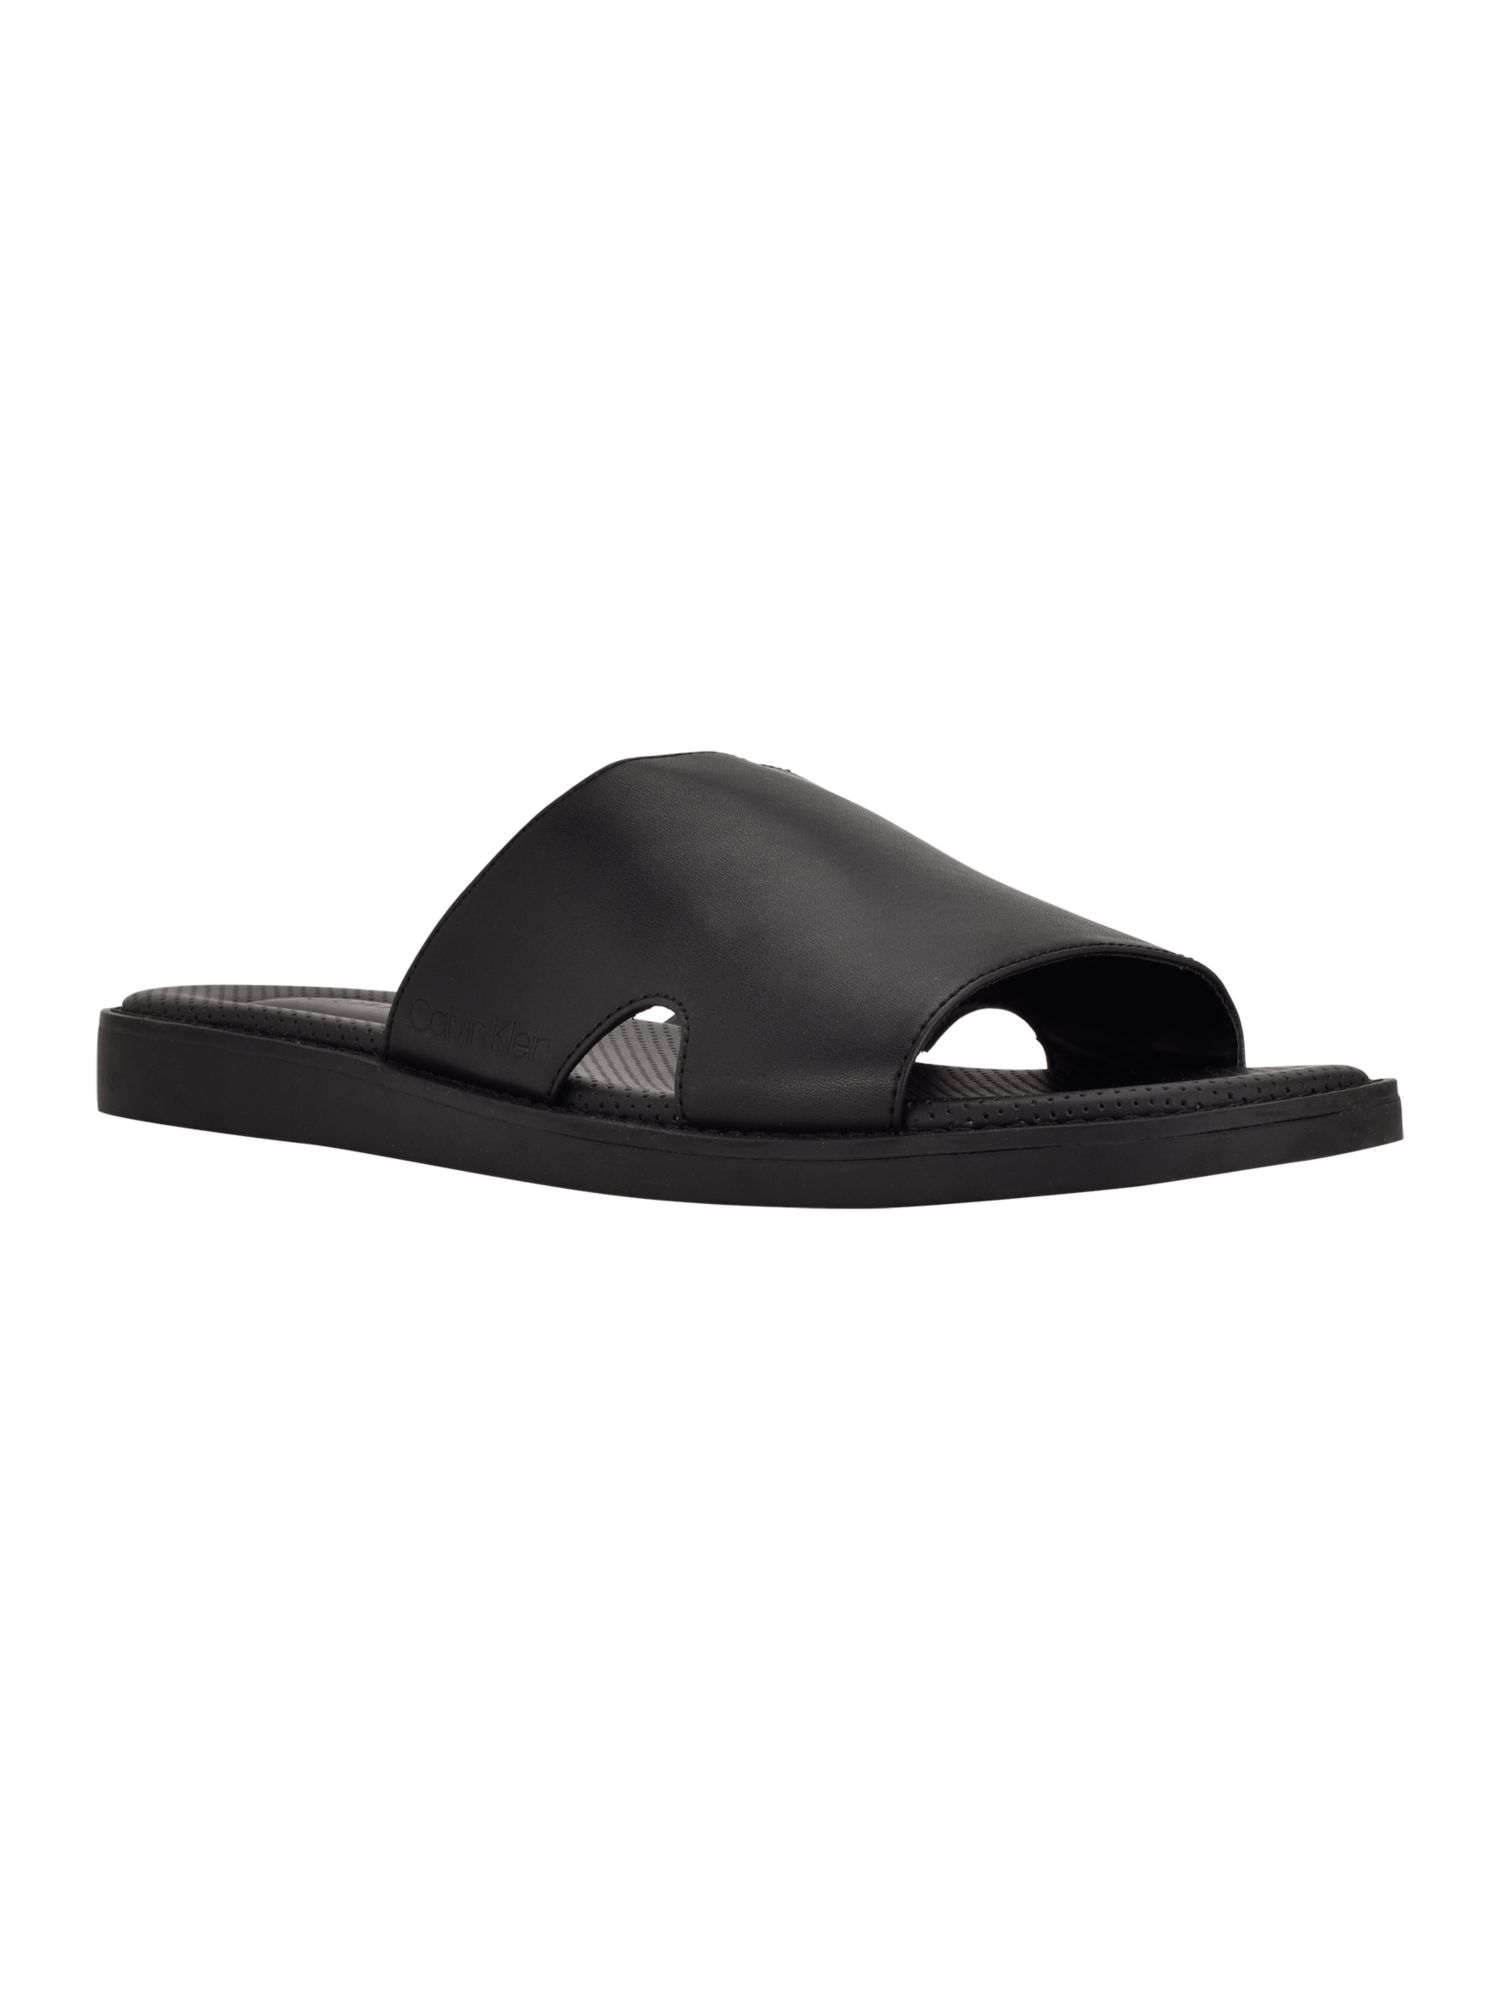 CALVIN KLEIN Mens Black Padded Goring Ethan Round Toe Wedge Slip On Slide Sandals Shoes 11.5